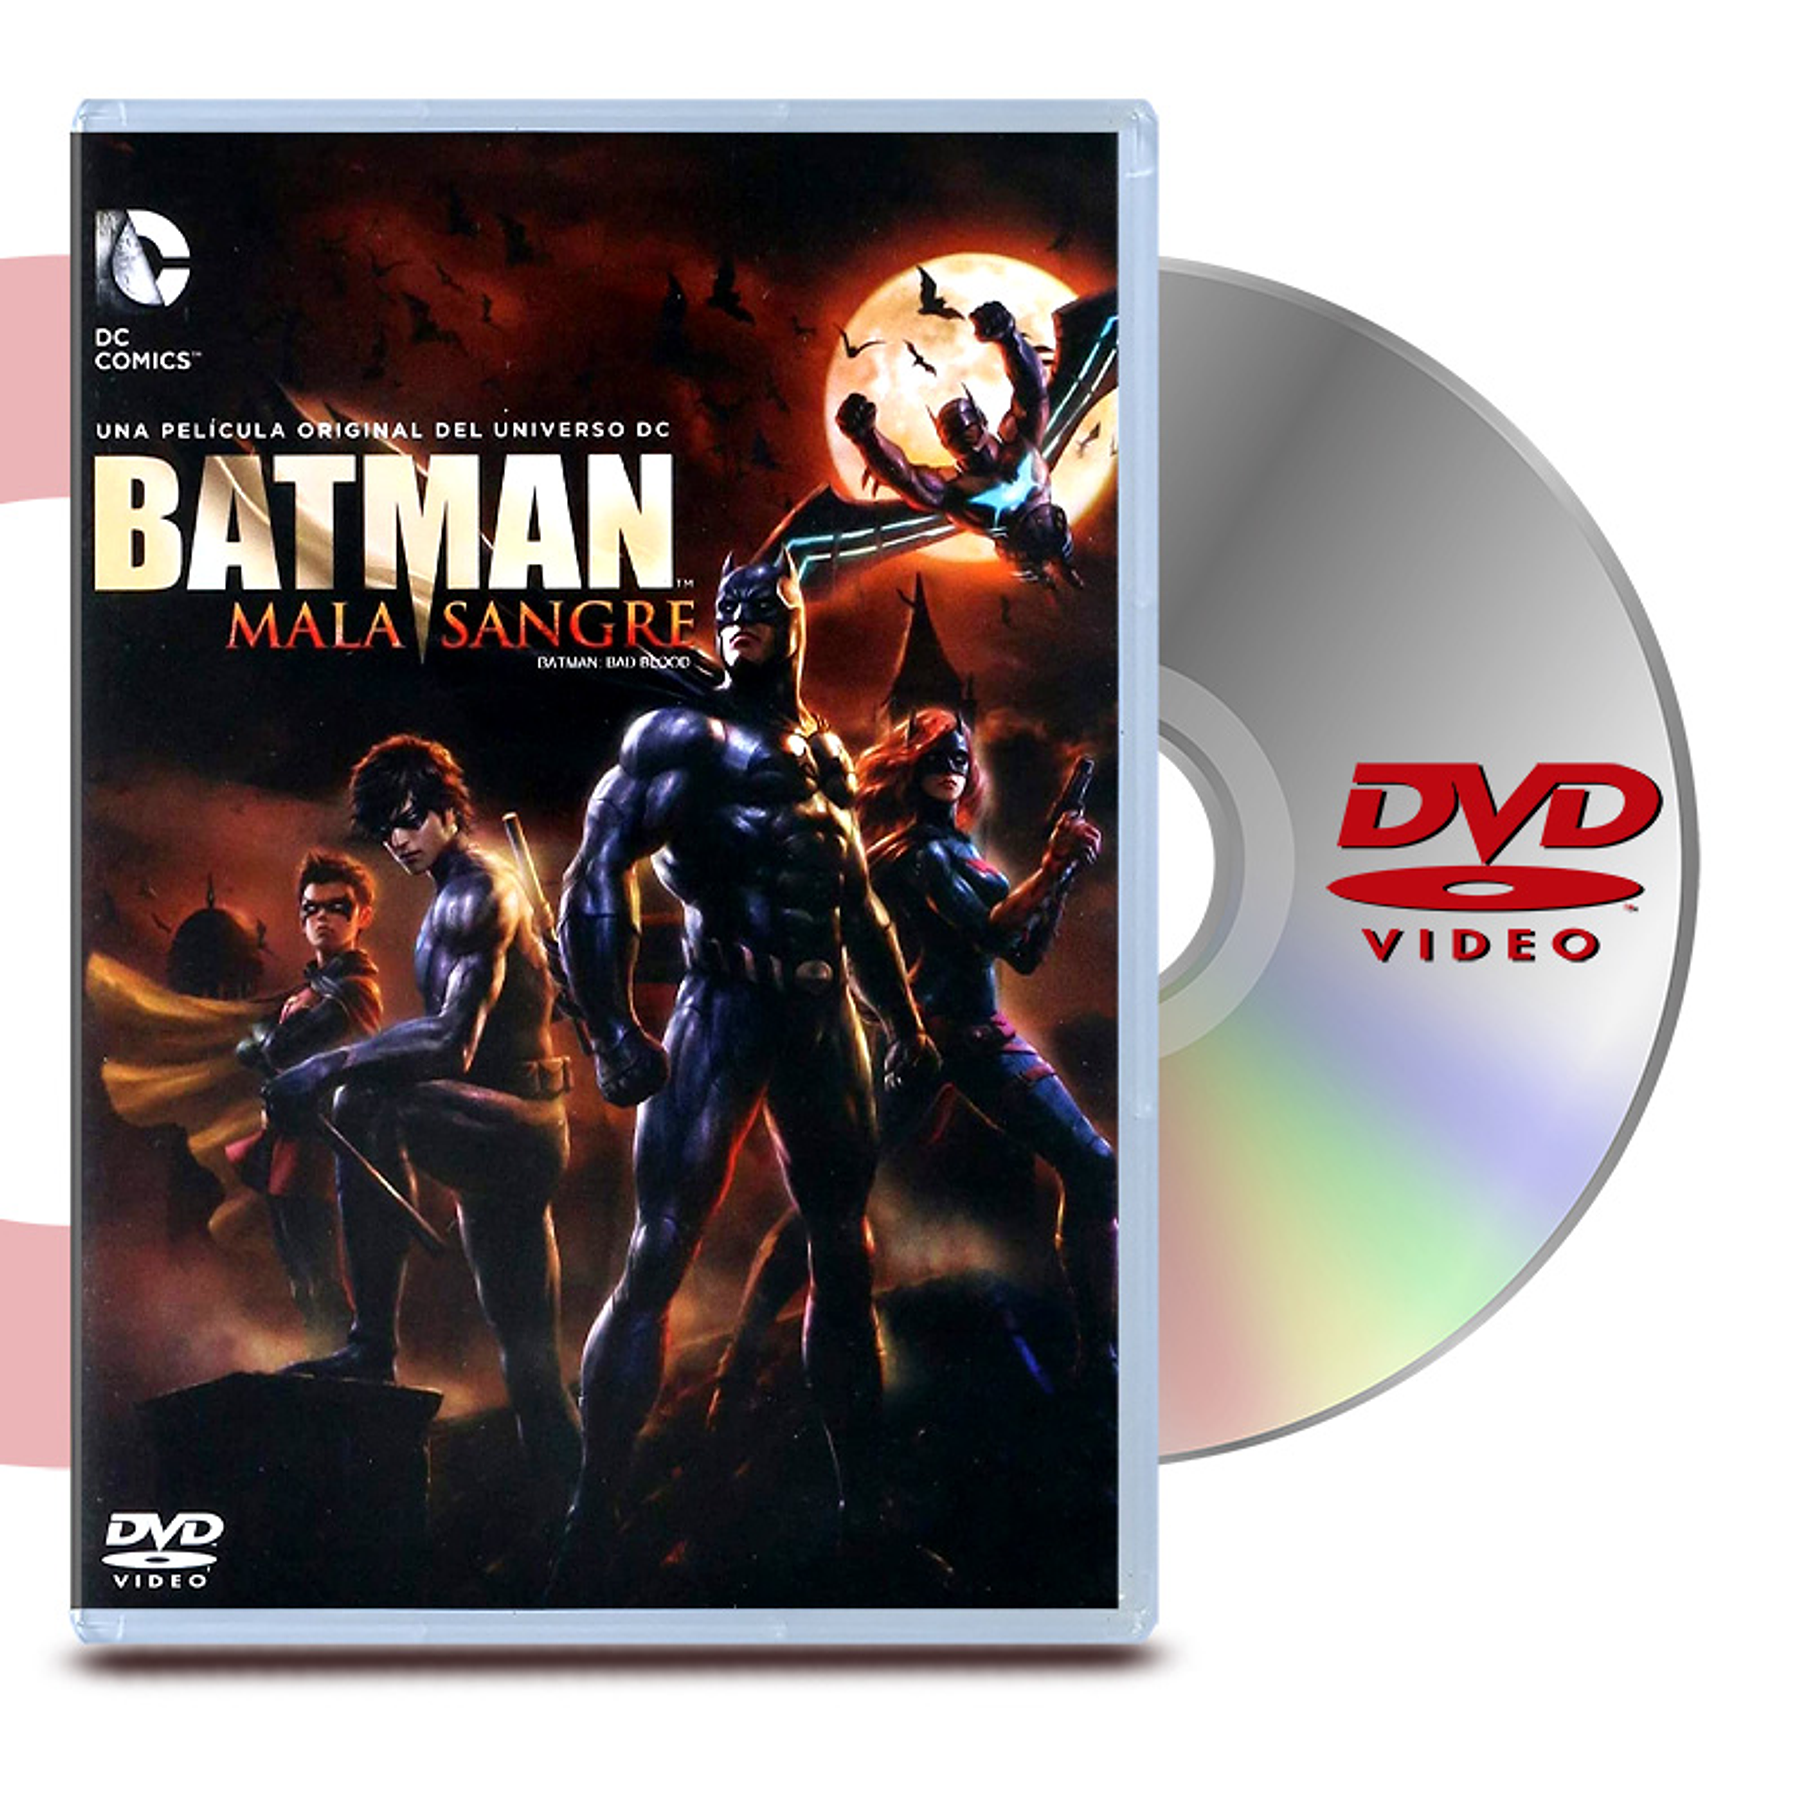 DVD BATMAN MALA SANGRE